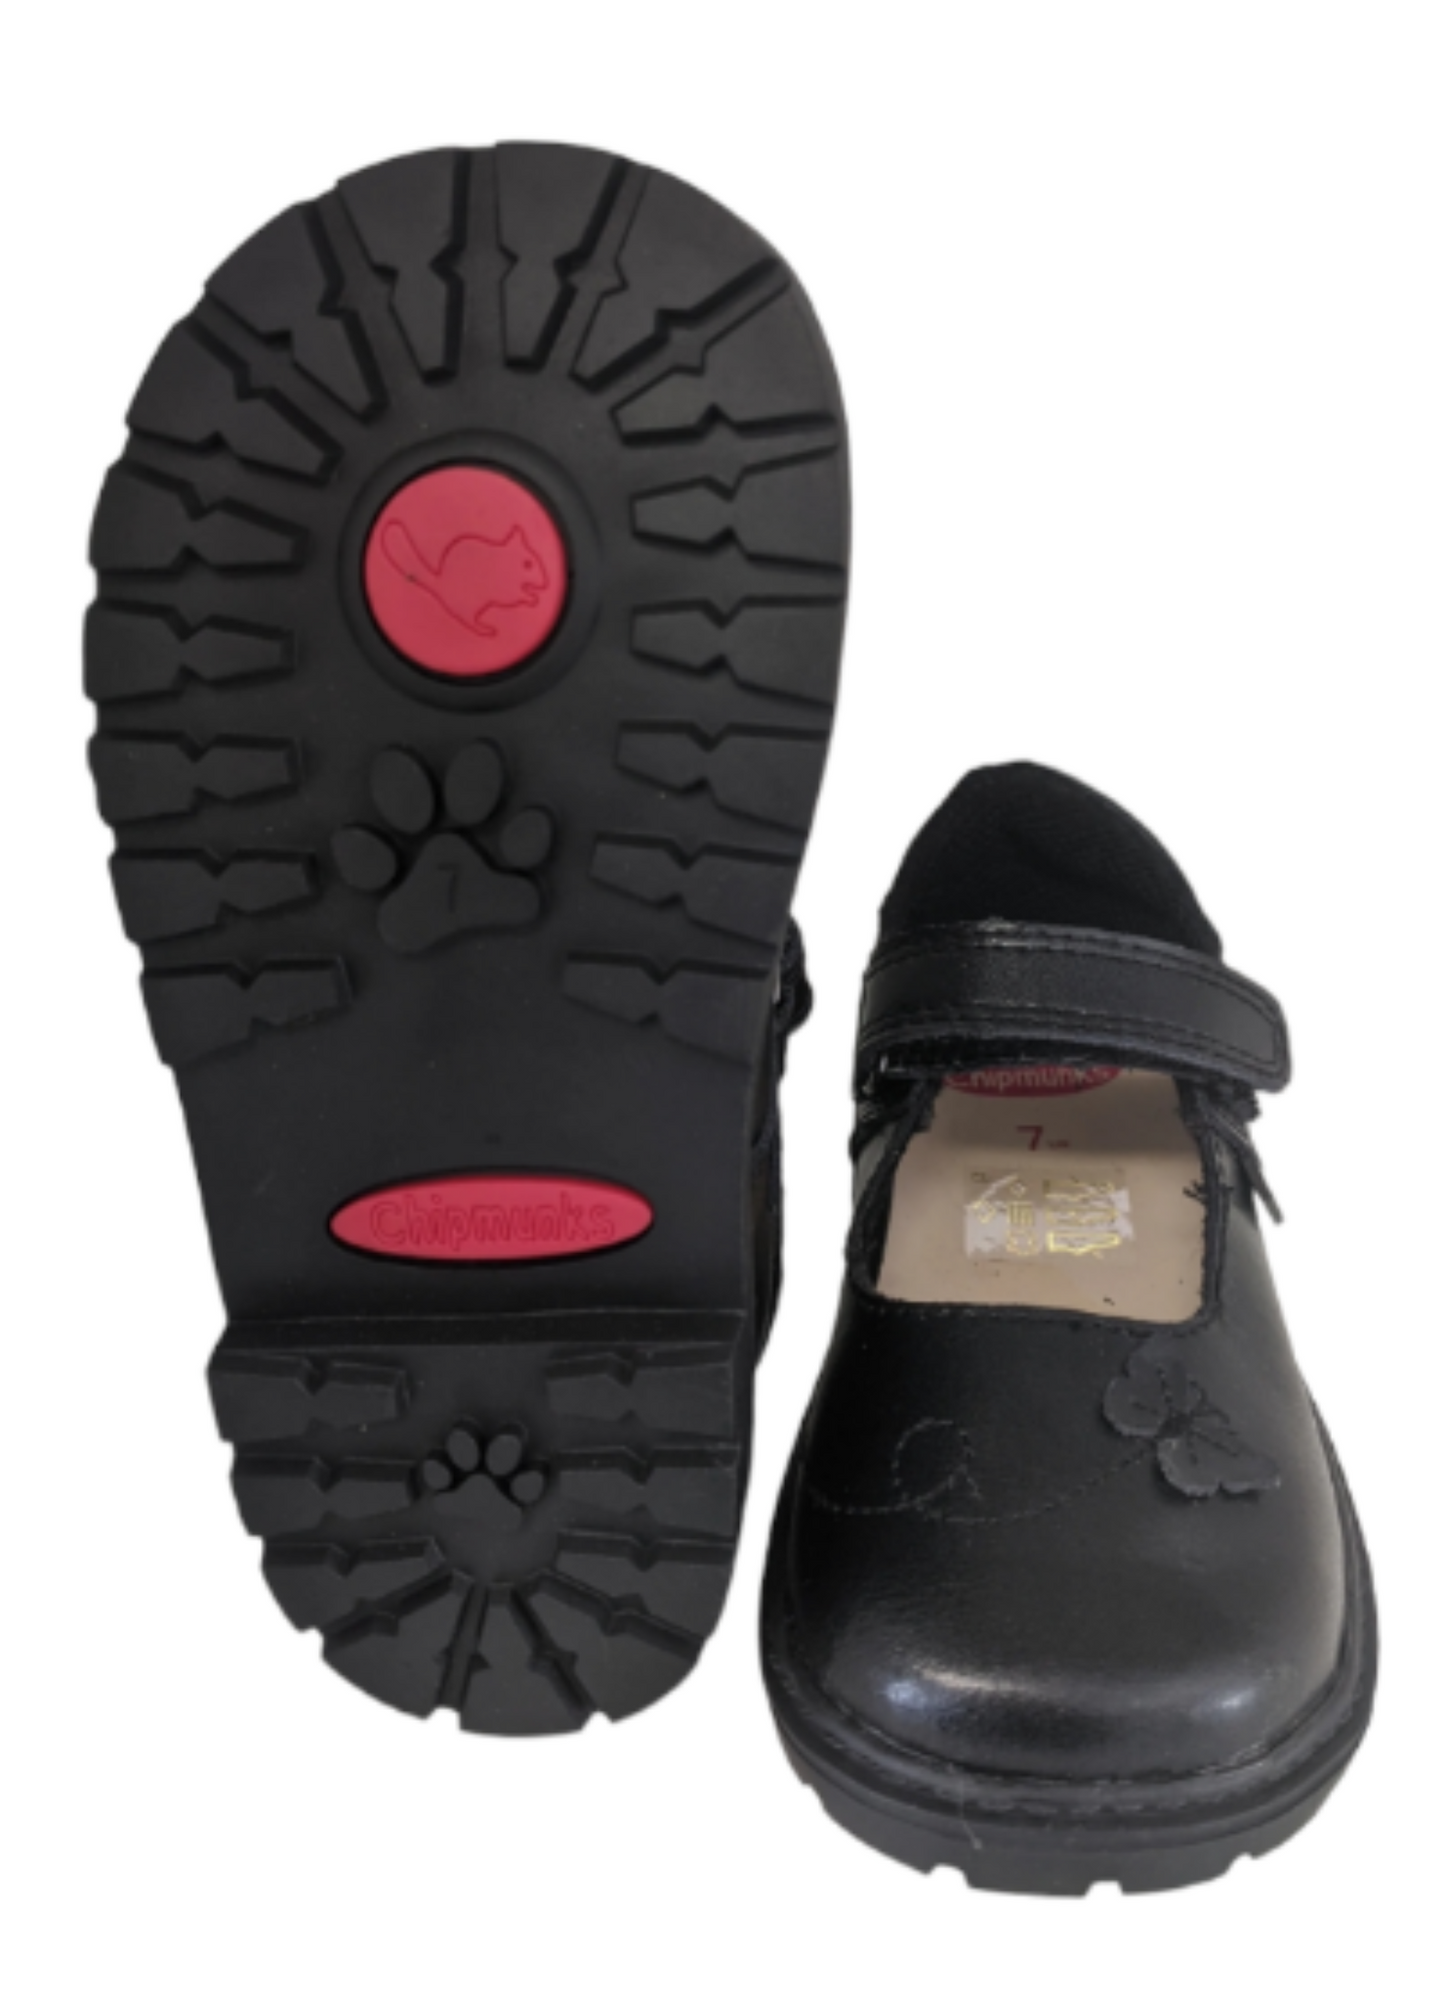 (SALE) Chipmunks Paige Black School Shoes